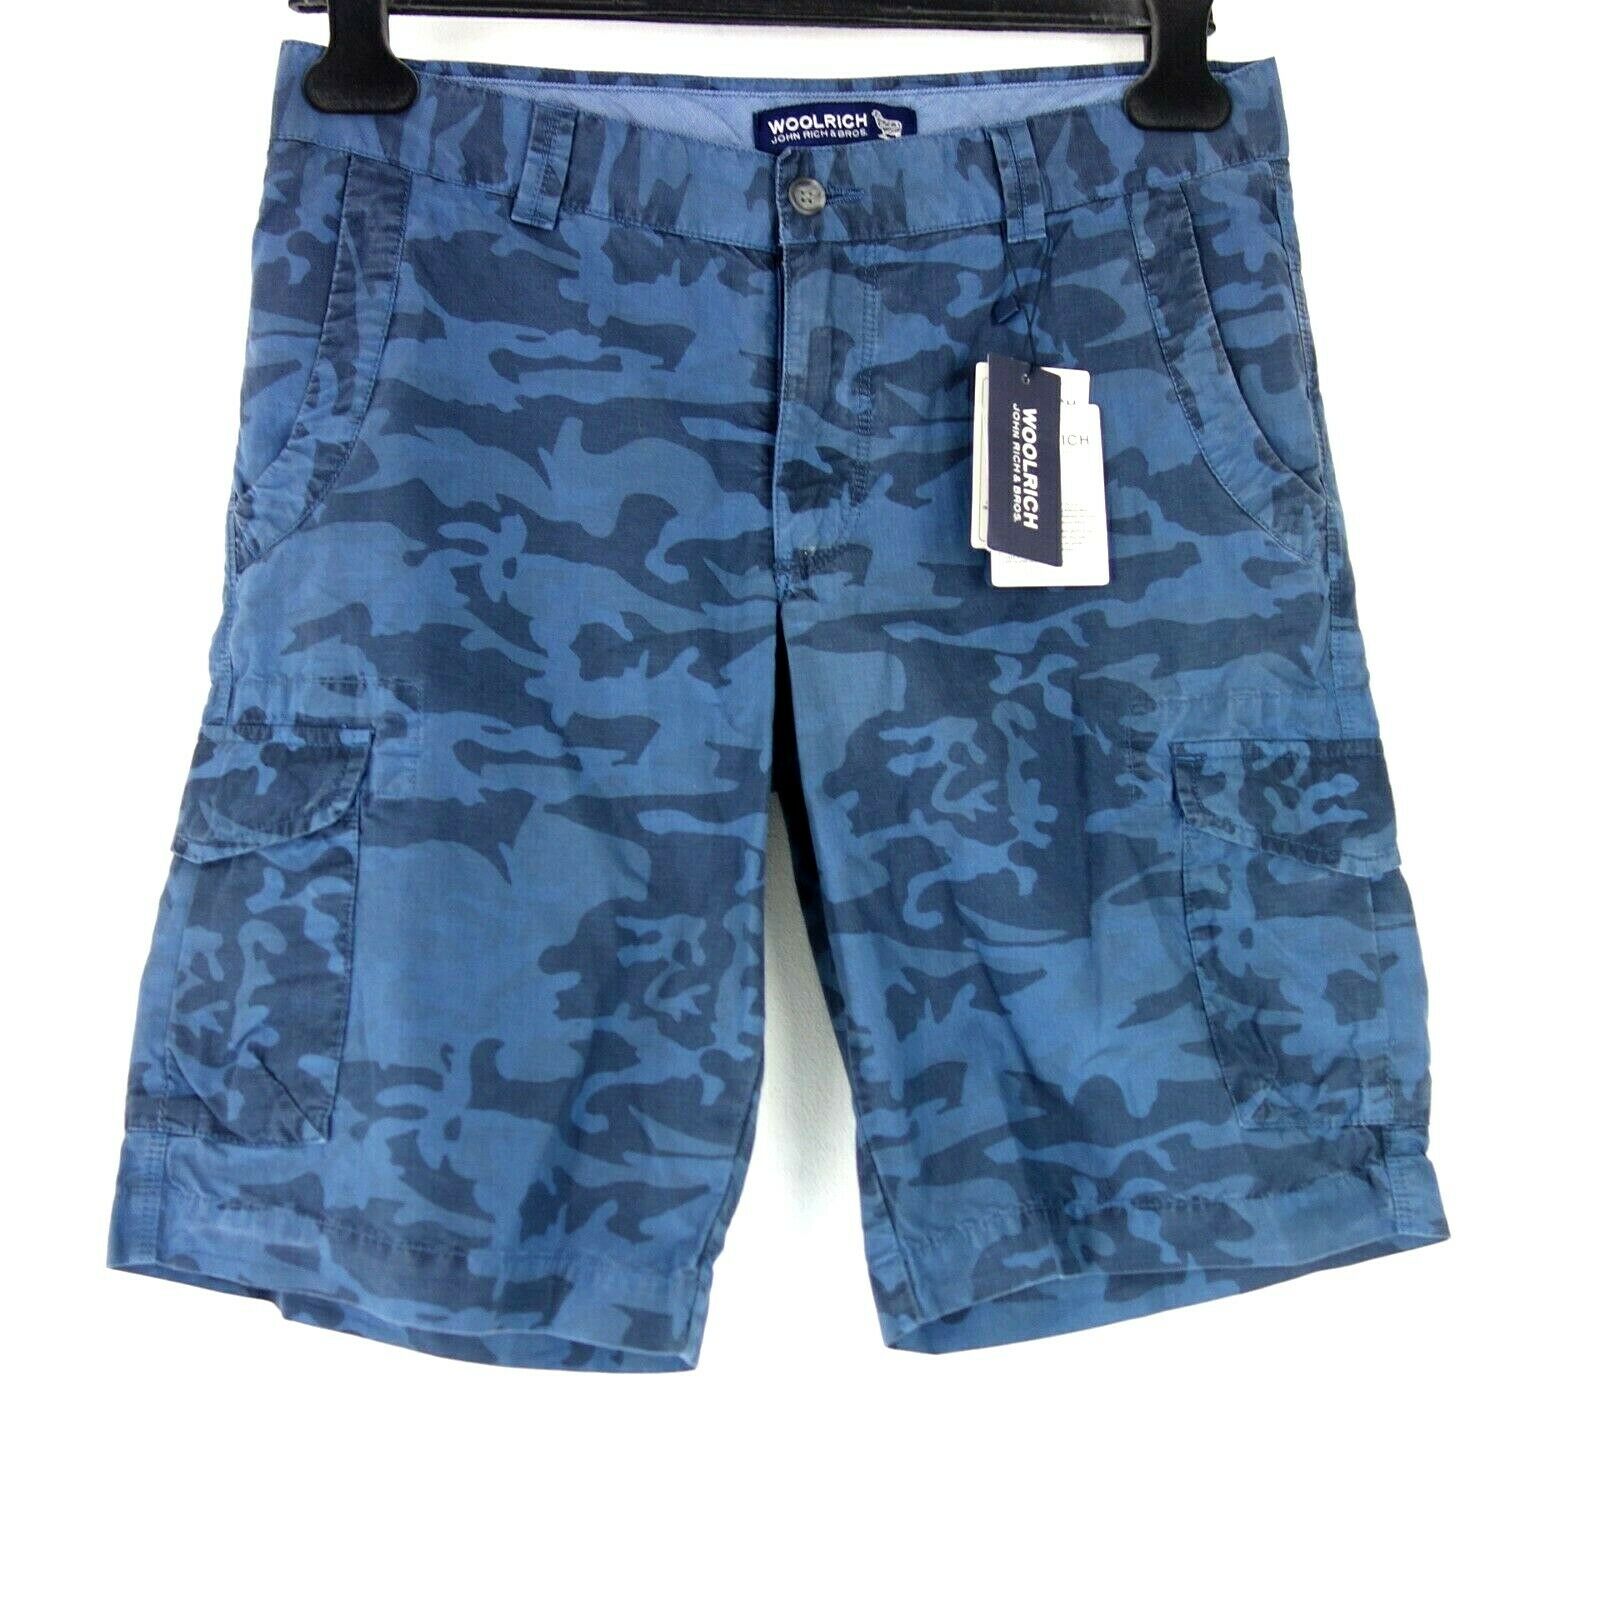 WOOLRICH Herren Kurze Hose Shorts Herrenshorts Cargo Bermuda Blau W31 Camouflage